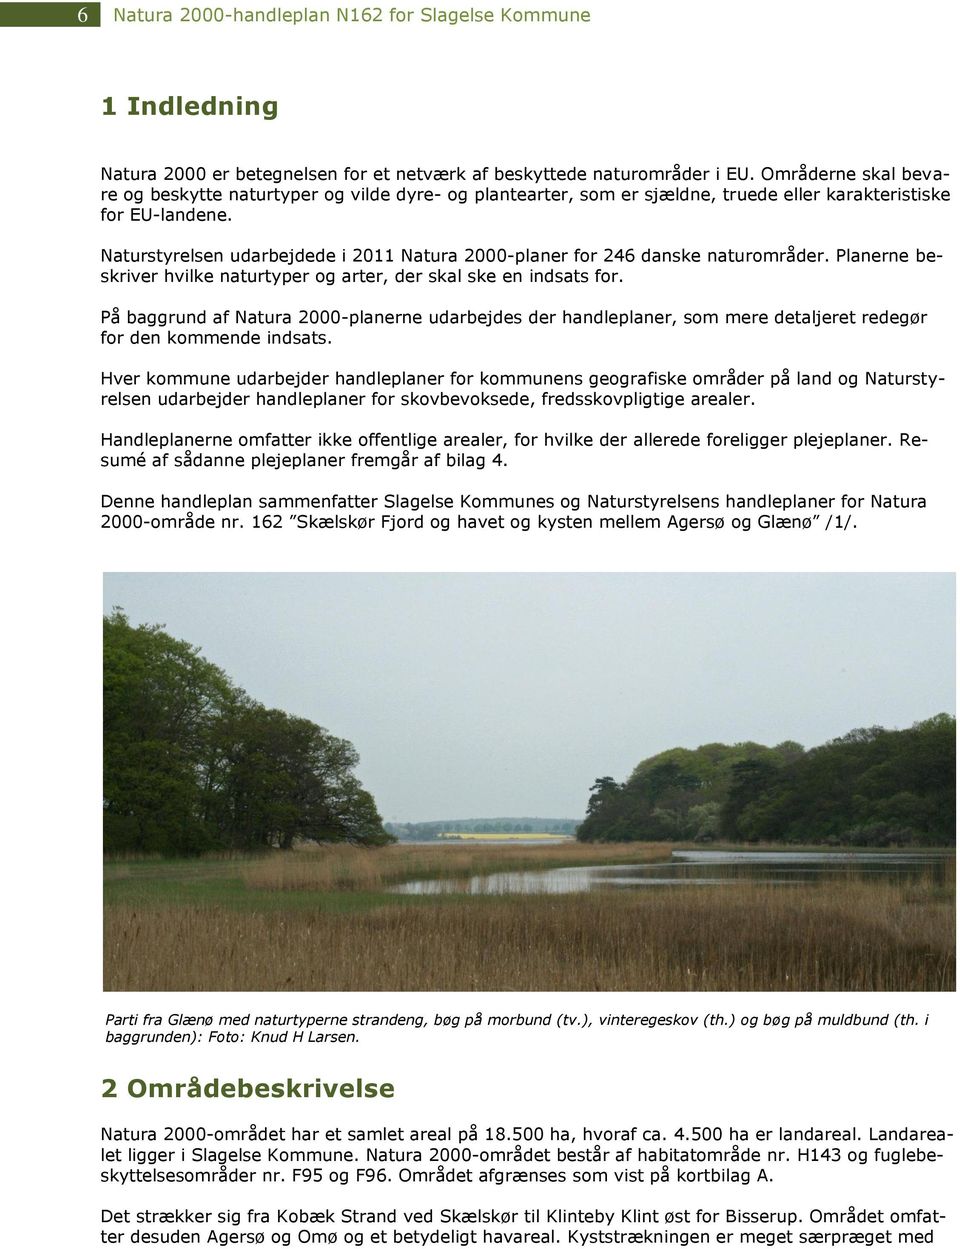 Naturstyrelsen udarbejdede i 2011 Natura 2000-planer for 246 danske naturområder. Planerne beskriver hvilke naturtyper og arter, der skal ske en indsats for.